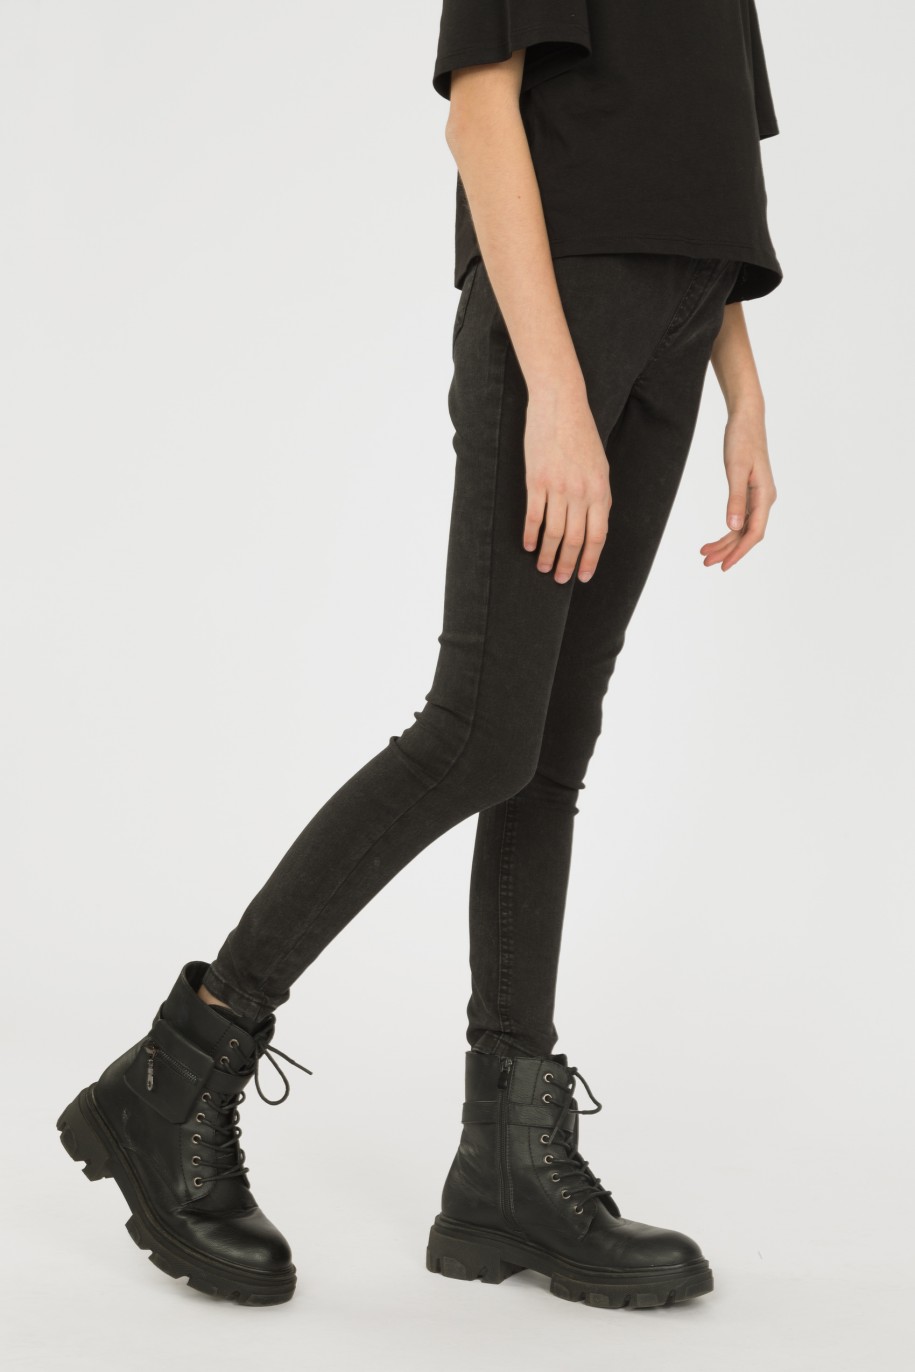 Czarne spodnie jegginsy dla dziewczyny - 33122